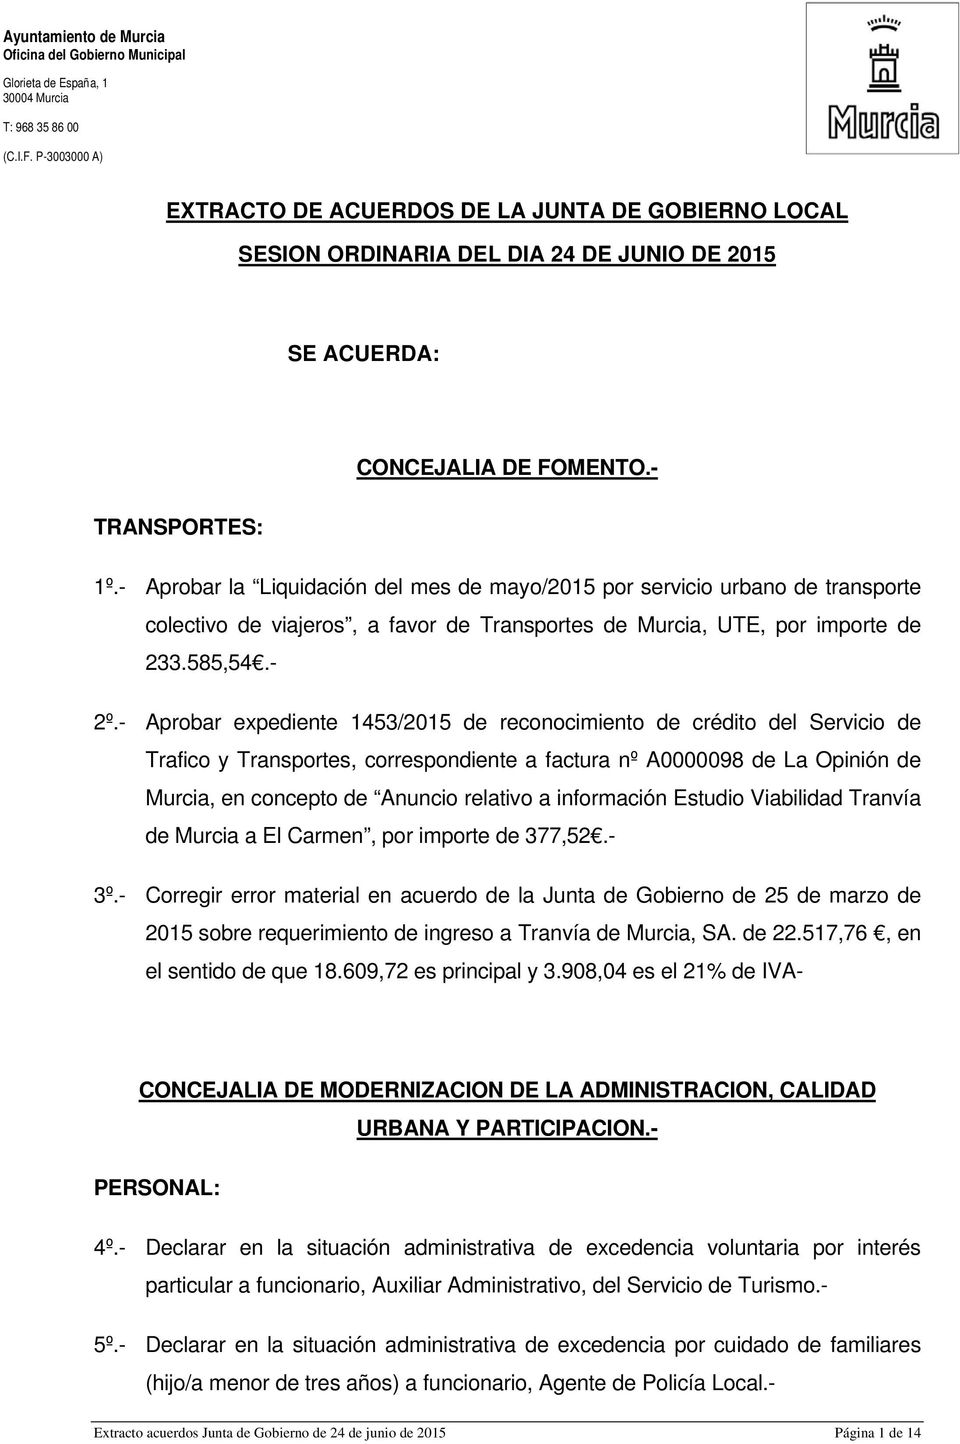 - Aprobar expediente 1453/2015 de reconocimiento de crédito del Servicio de Trafico y Transportes, correspondiente a factura nº A0000098 de La Opinión de Murcia, en concepto de Anuncio relativo a